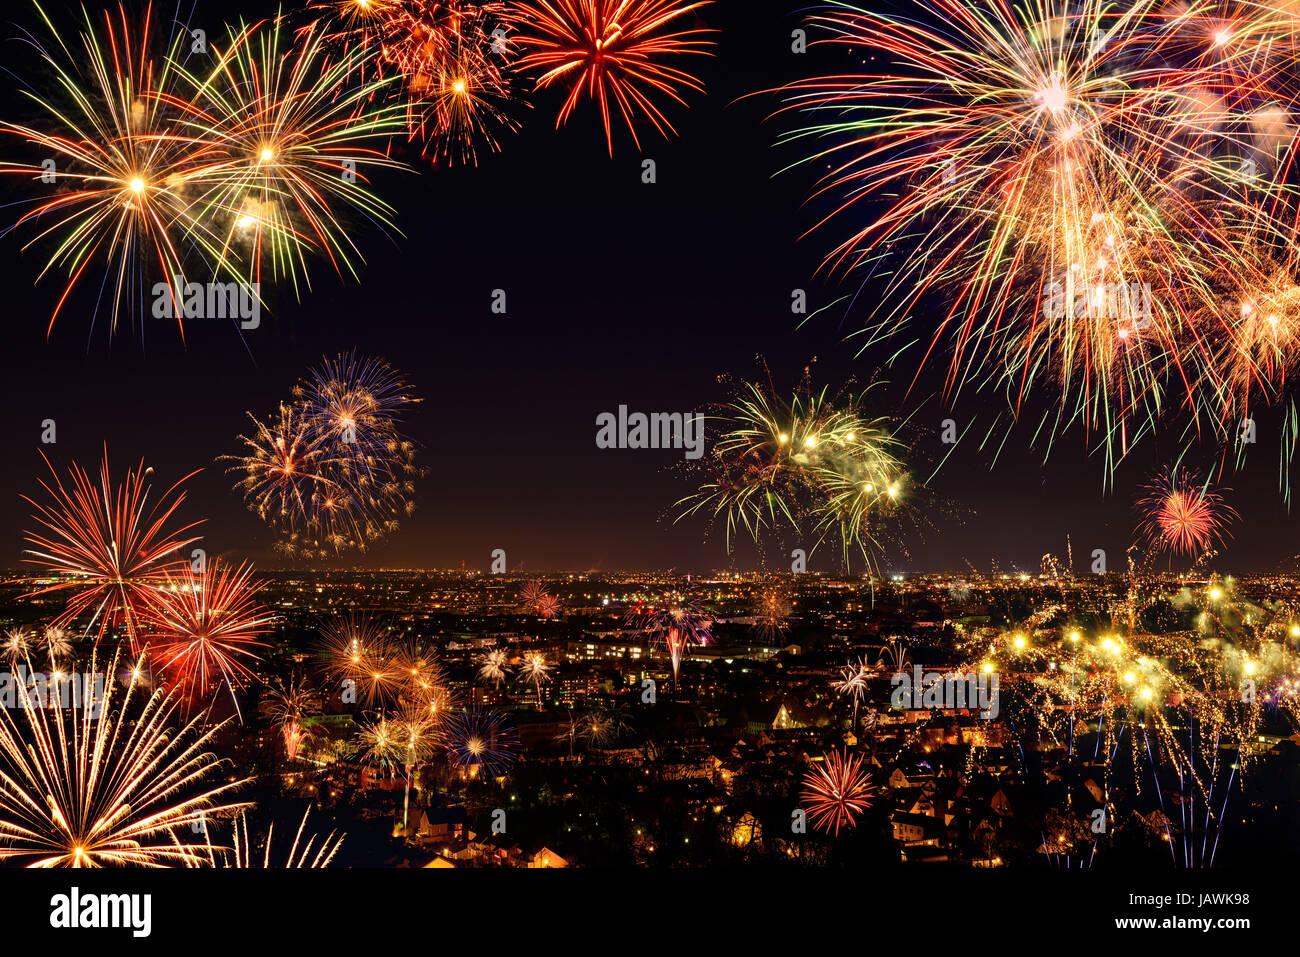 Buntes Lebhaftes Feuerwerk über einer Stadt, gesehen von oben Foto Stock